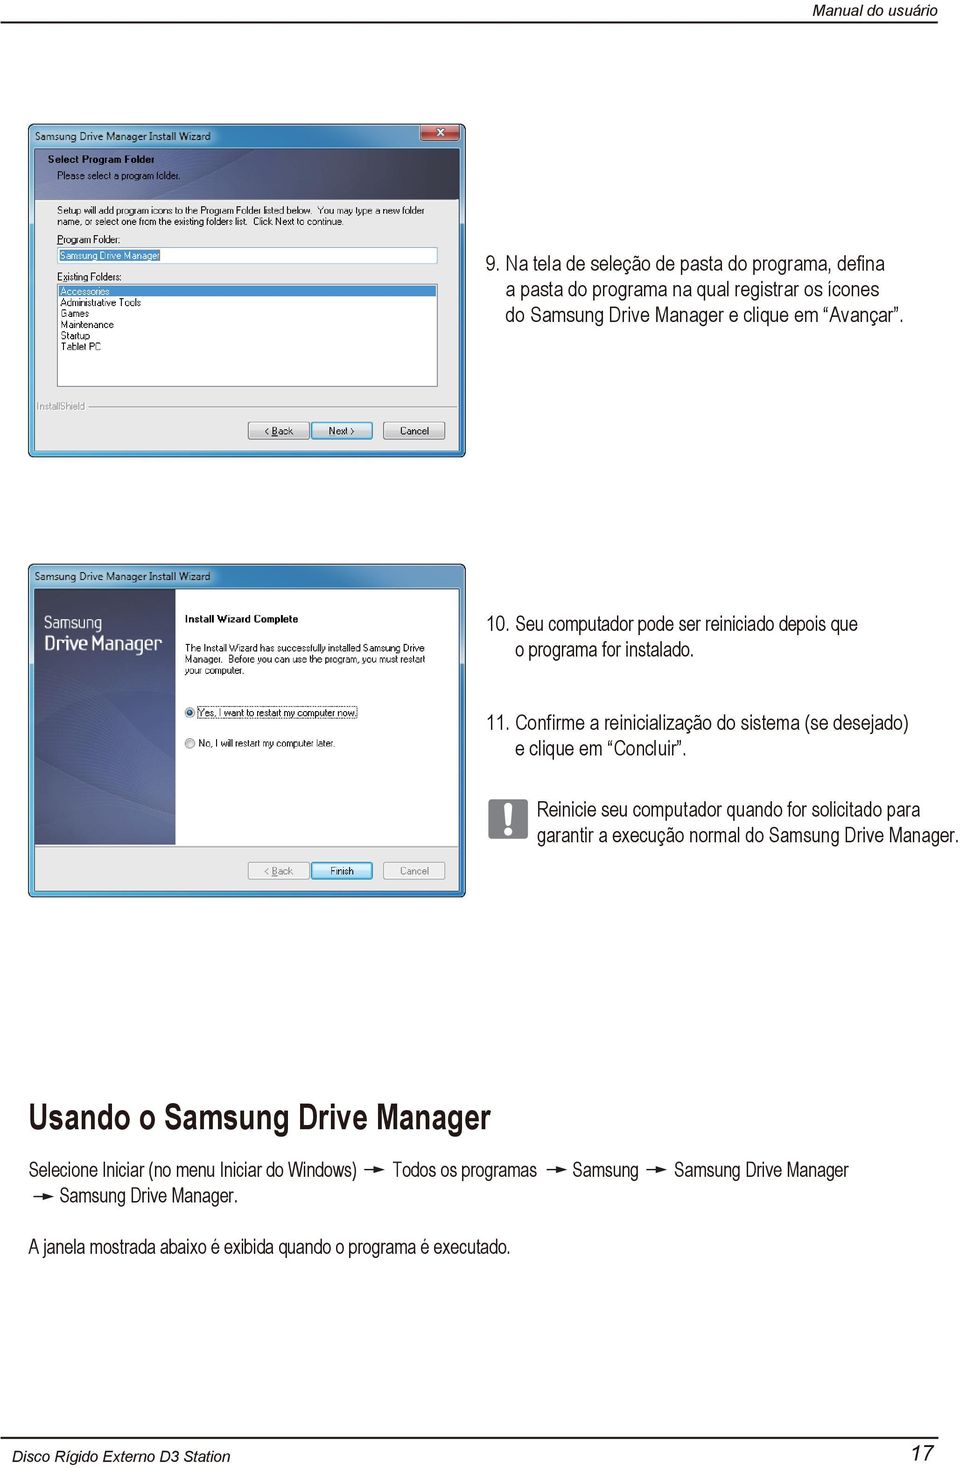 Reinicie seu computador quando for solicitado para garantir a execução normal do Samsung Drive Manager.